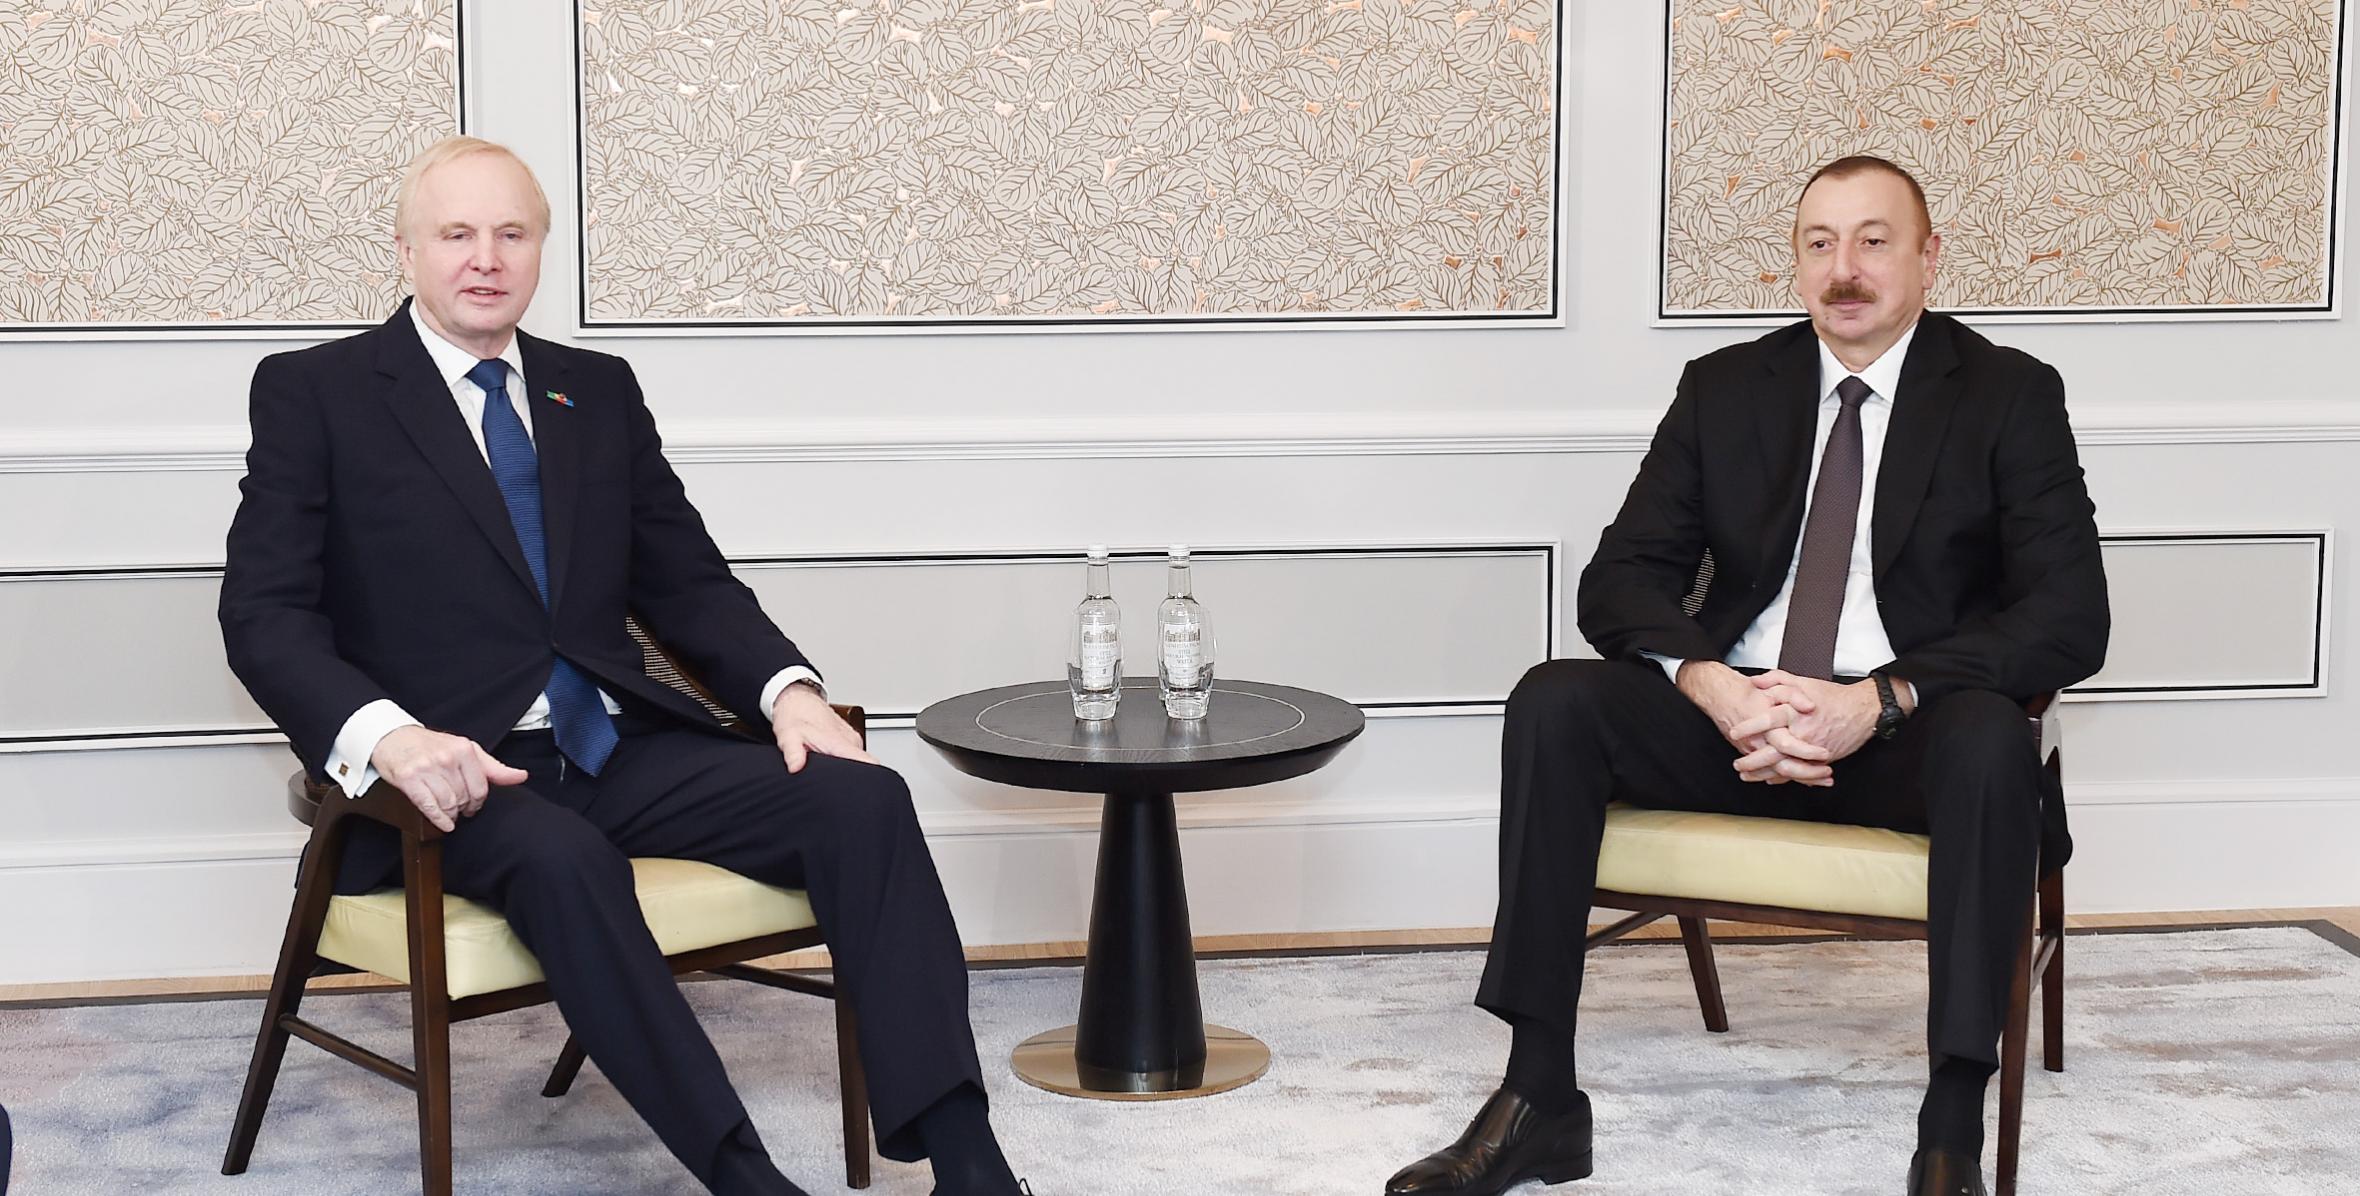 Ilham Aliyev met with BP CEO in London